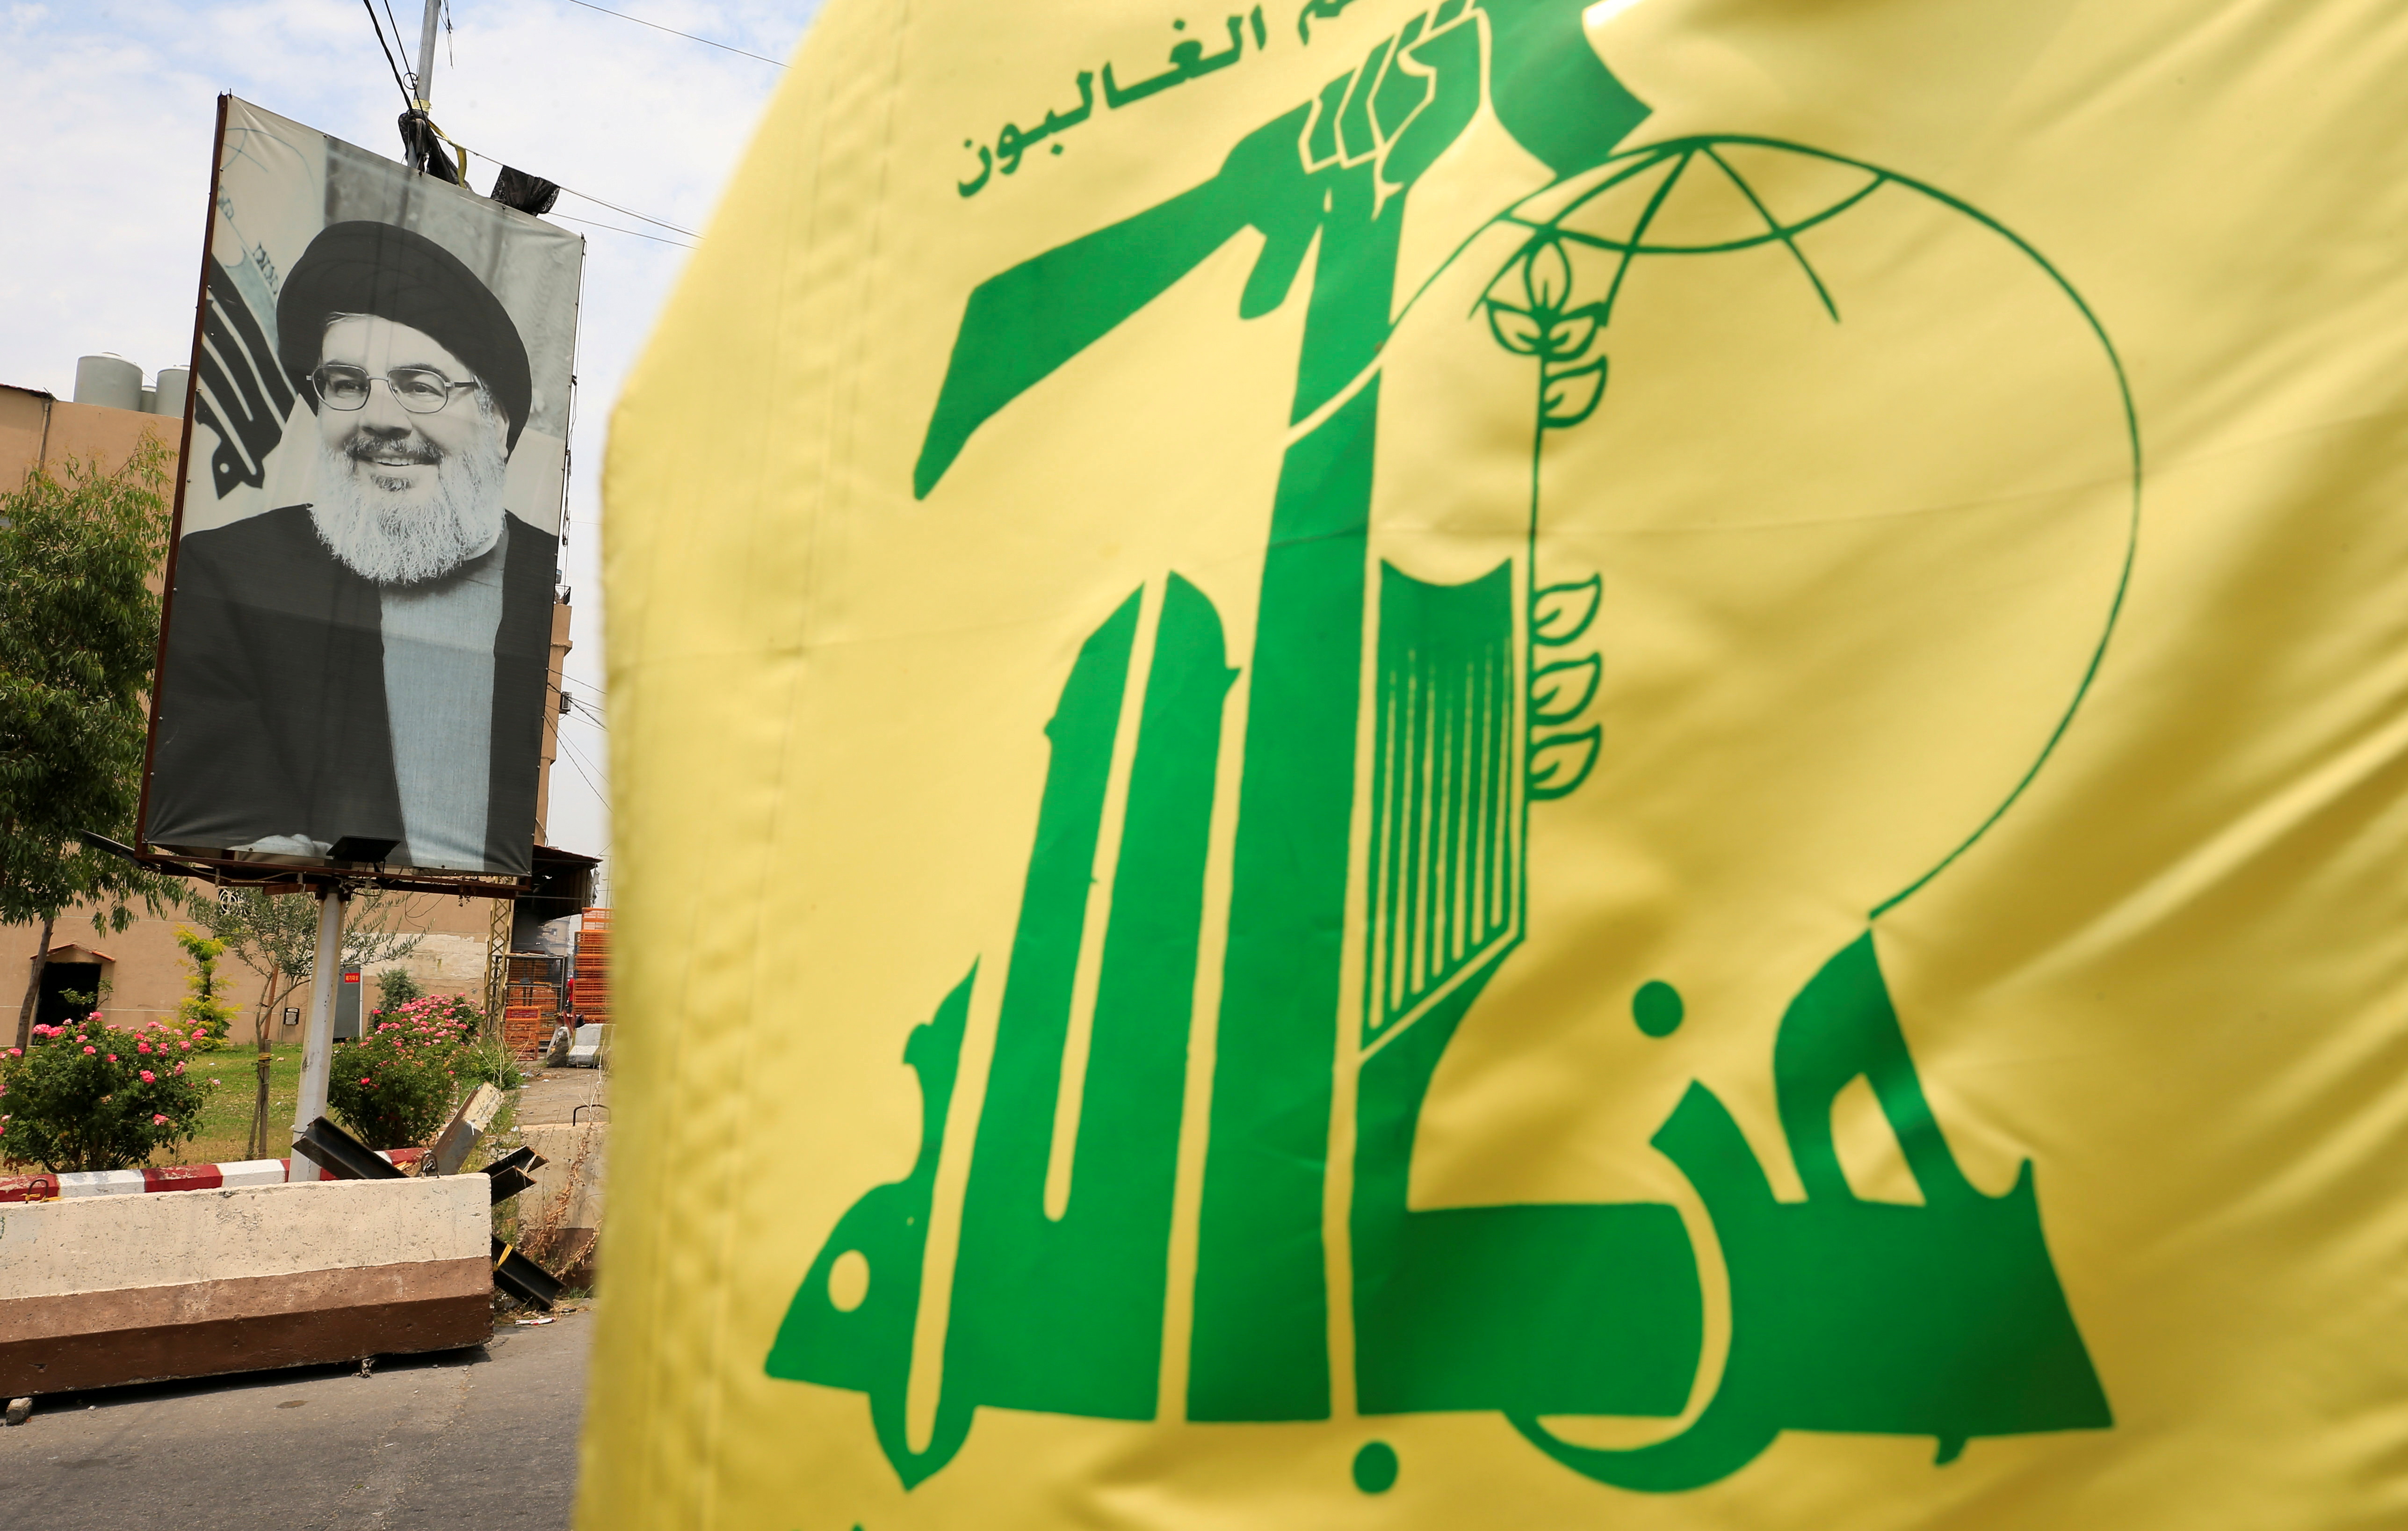 El grupo terrorista Hezbollah, liderado por Hassan Nasrallah, incrementó significativamente su influencia en América Latina (REUTERS/Ali Hashisho)